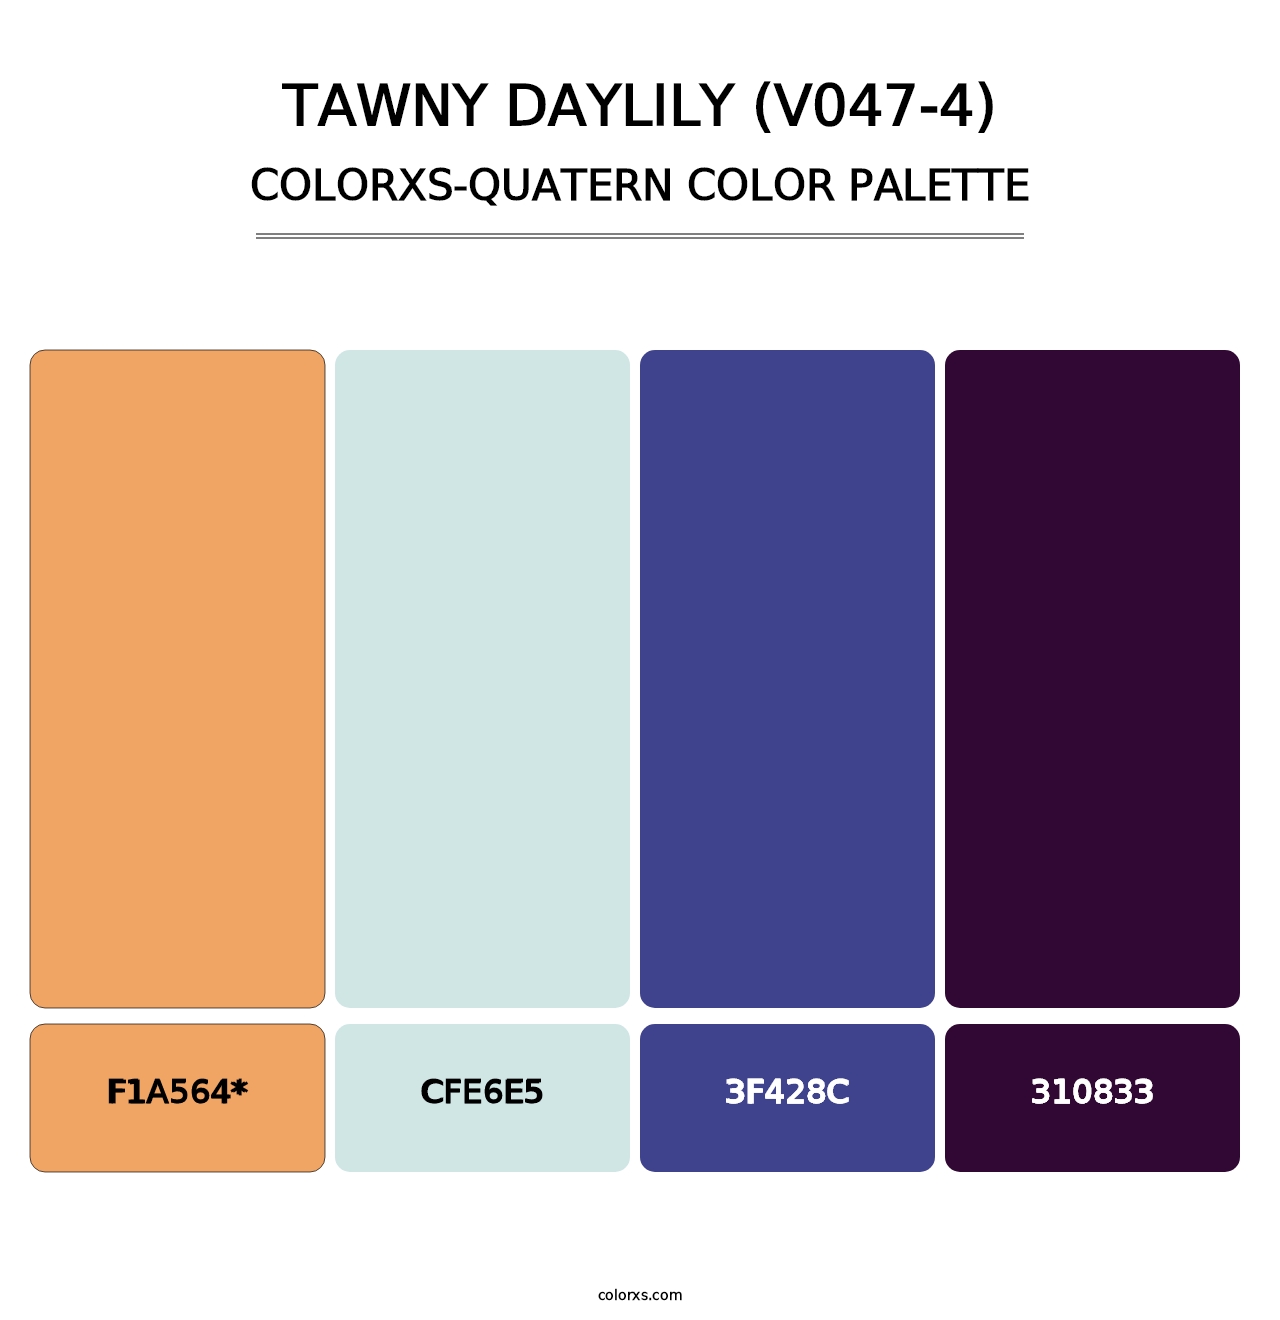 Tawny Daylily (V047-4) - Colorxs Quatern Palette